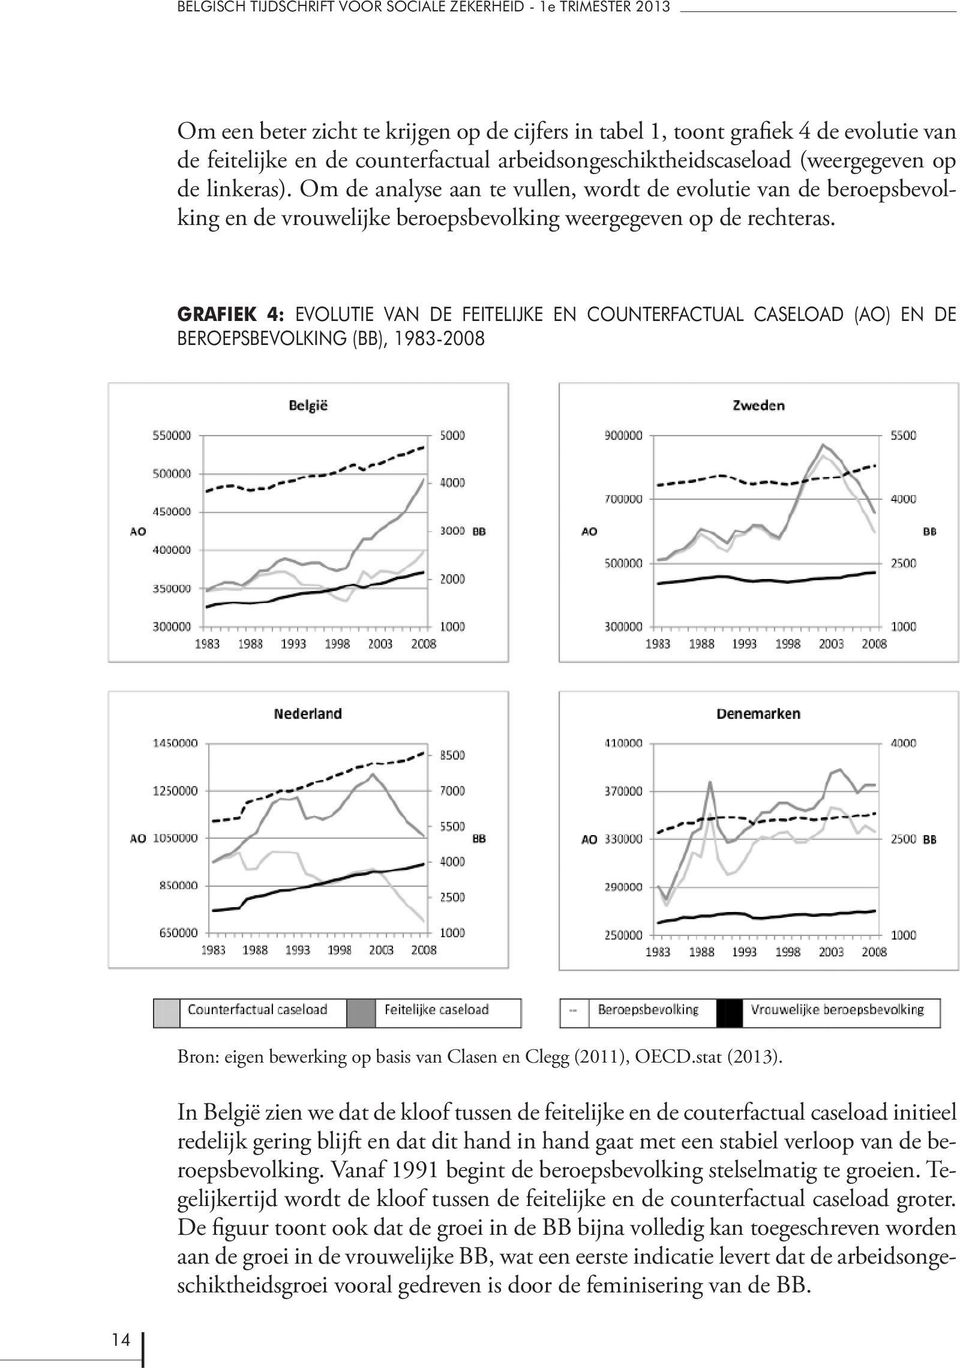 GRAFIEK 4: EVOLUTIE VAN DE FEITELIJKE EN COUNTERFACTUAL CASELOAD (AO) EN DE BEROEPSBEVOLKING (BB), 1983-2008 Bron: eigen bewerking op basis van Clasen en Clegg (2011), OECD.stat (2013).